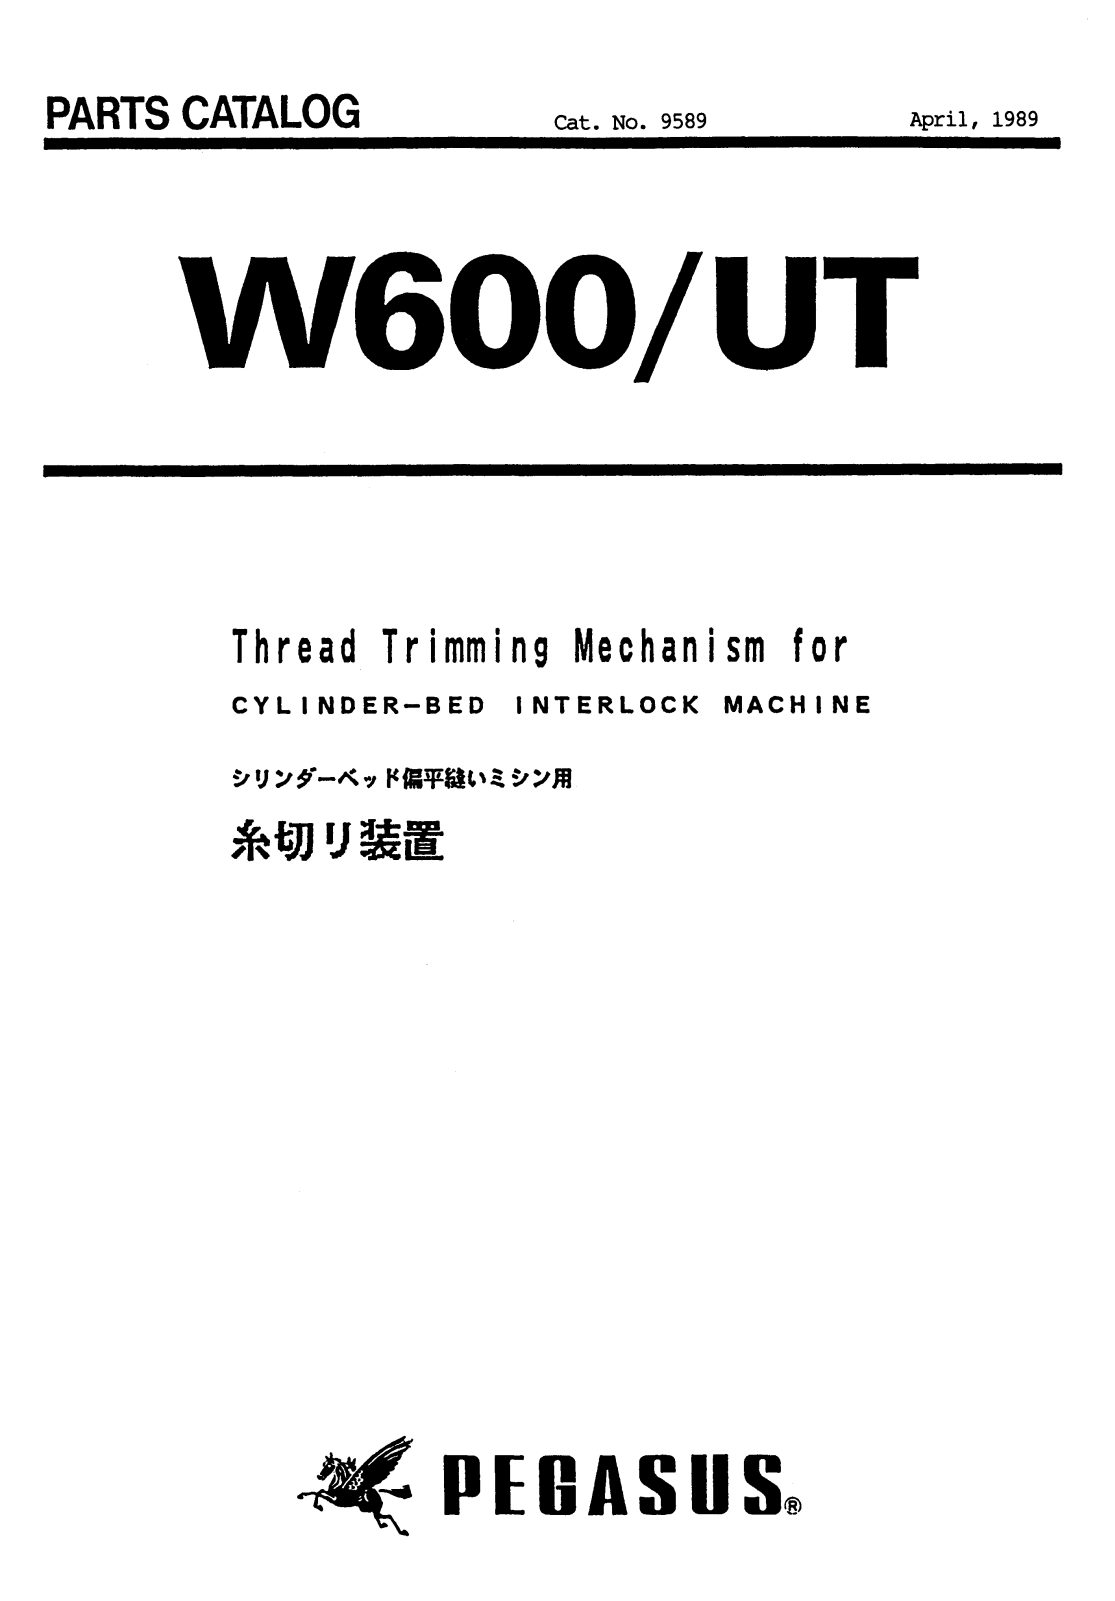 PEGASUS W600/UT Parts List